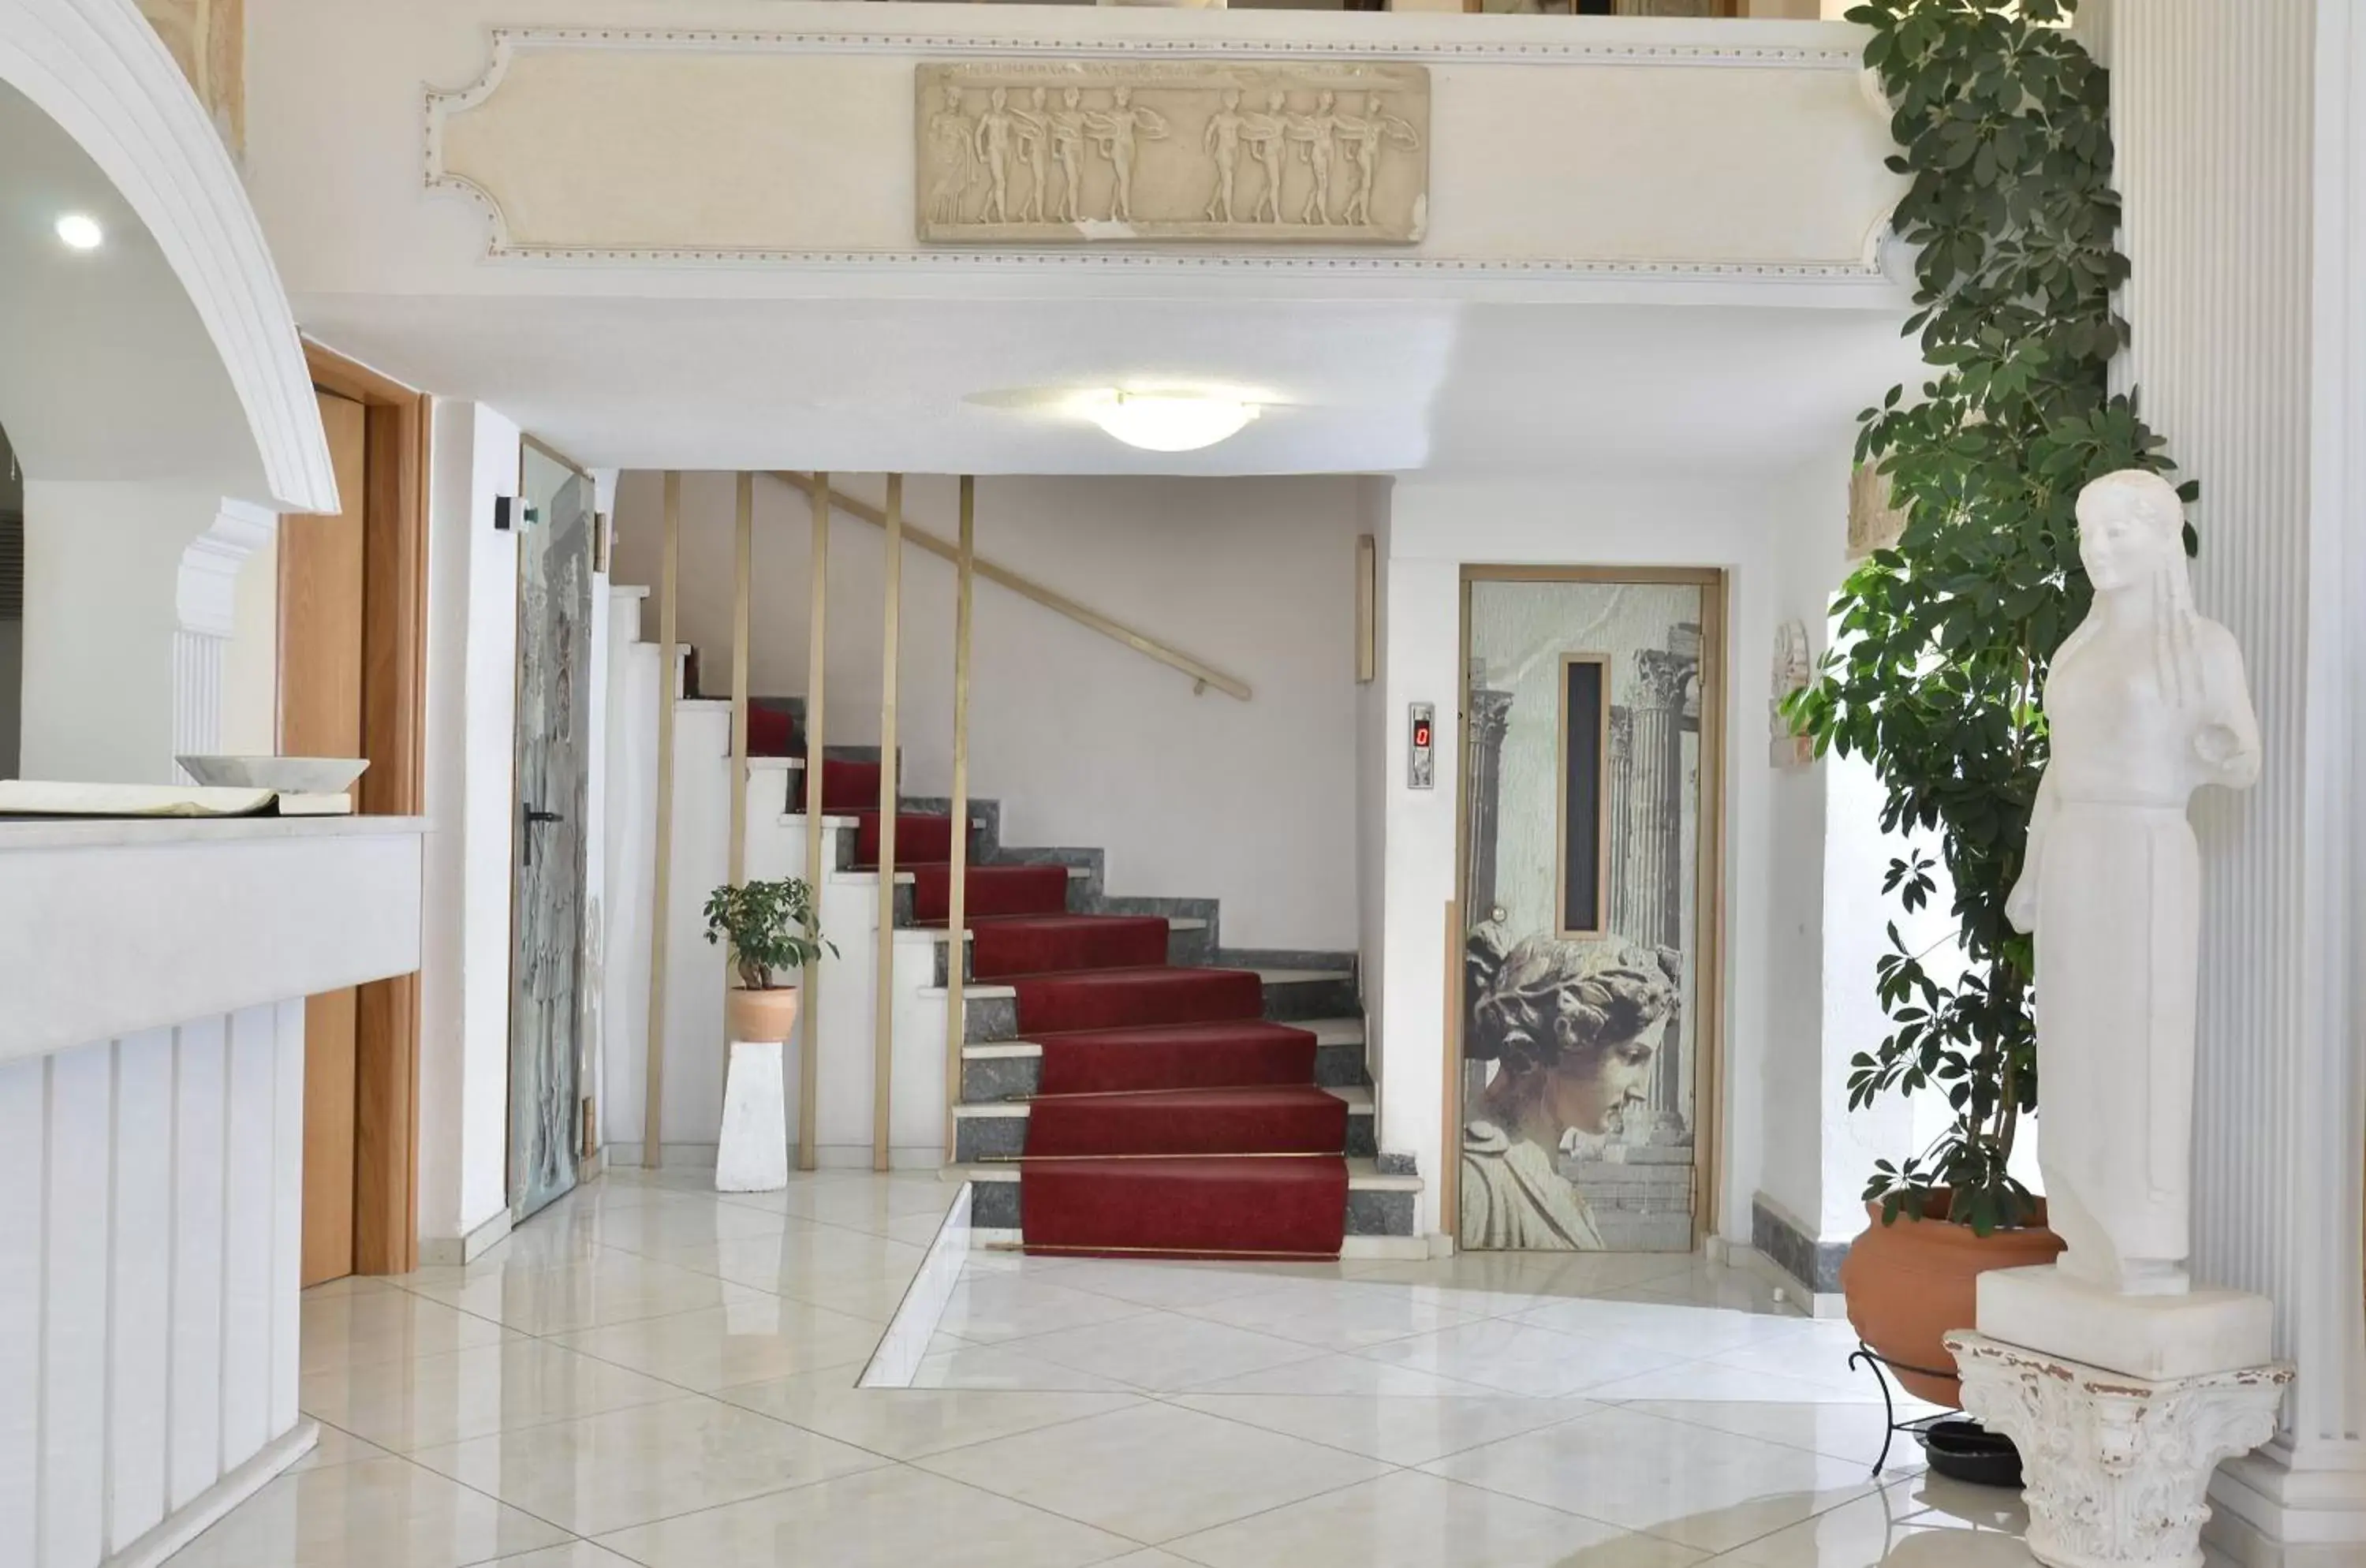 Lobby or reception in Acropolis Ami Boutique Hotel